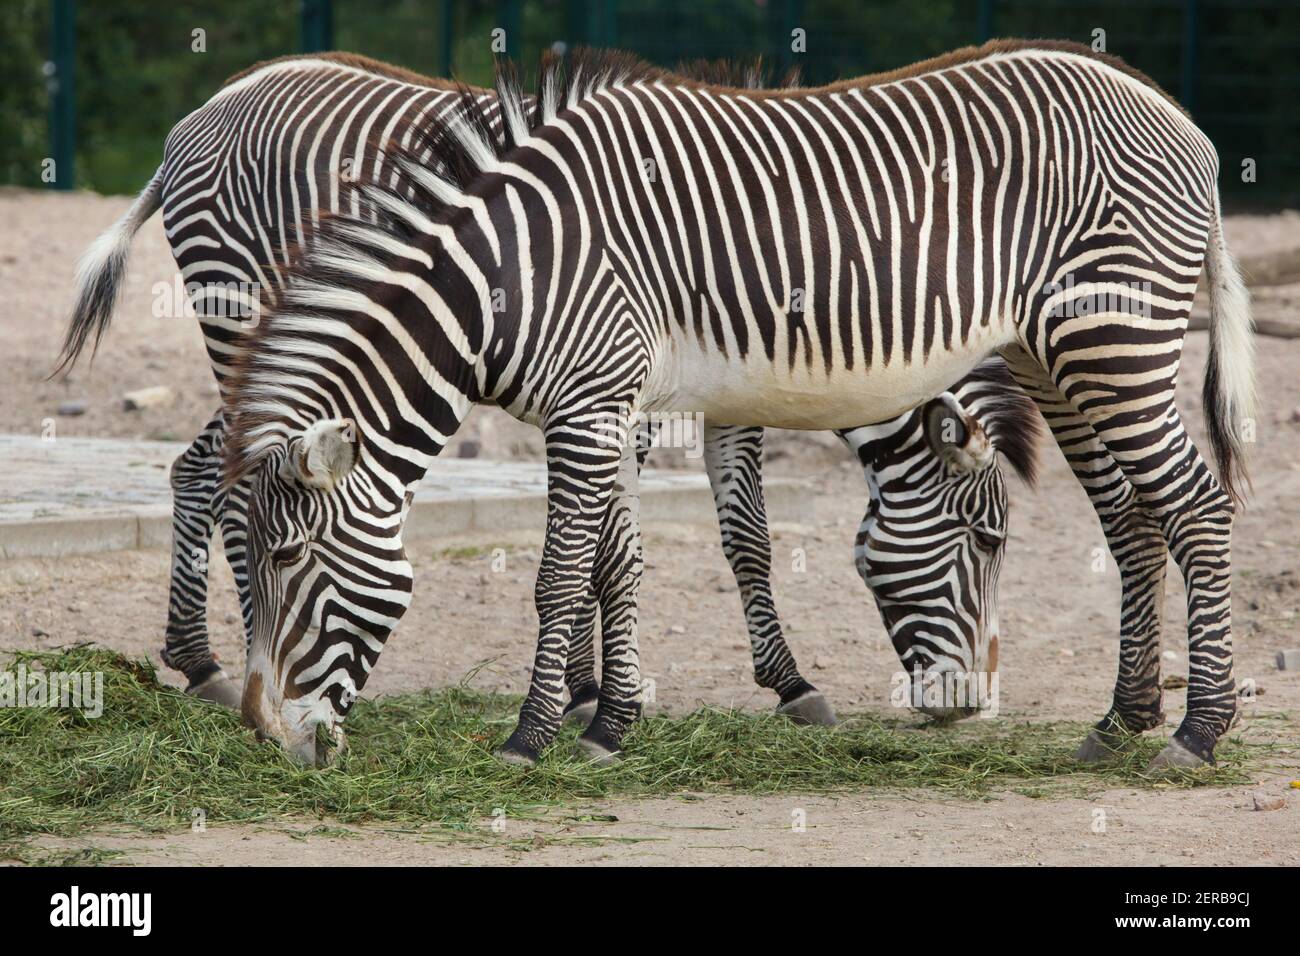 La Cebra de Grevy (Equus grevyi), también conocido como el imperial zebra. Foto de stock